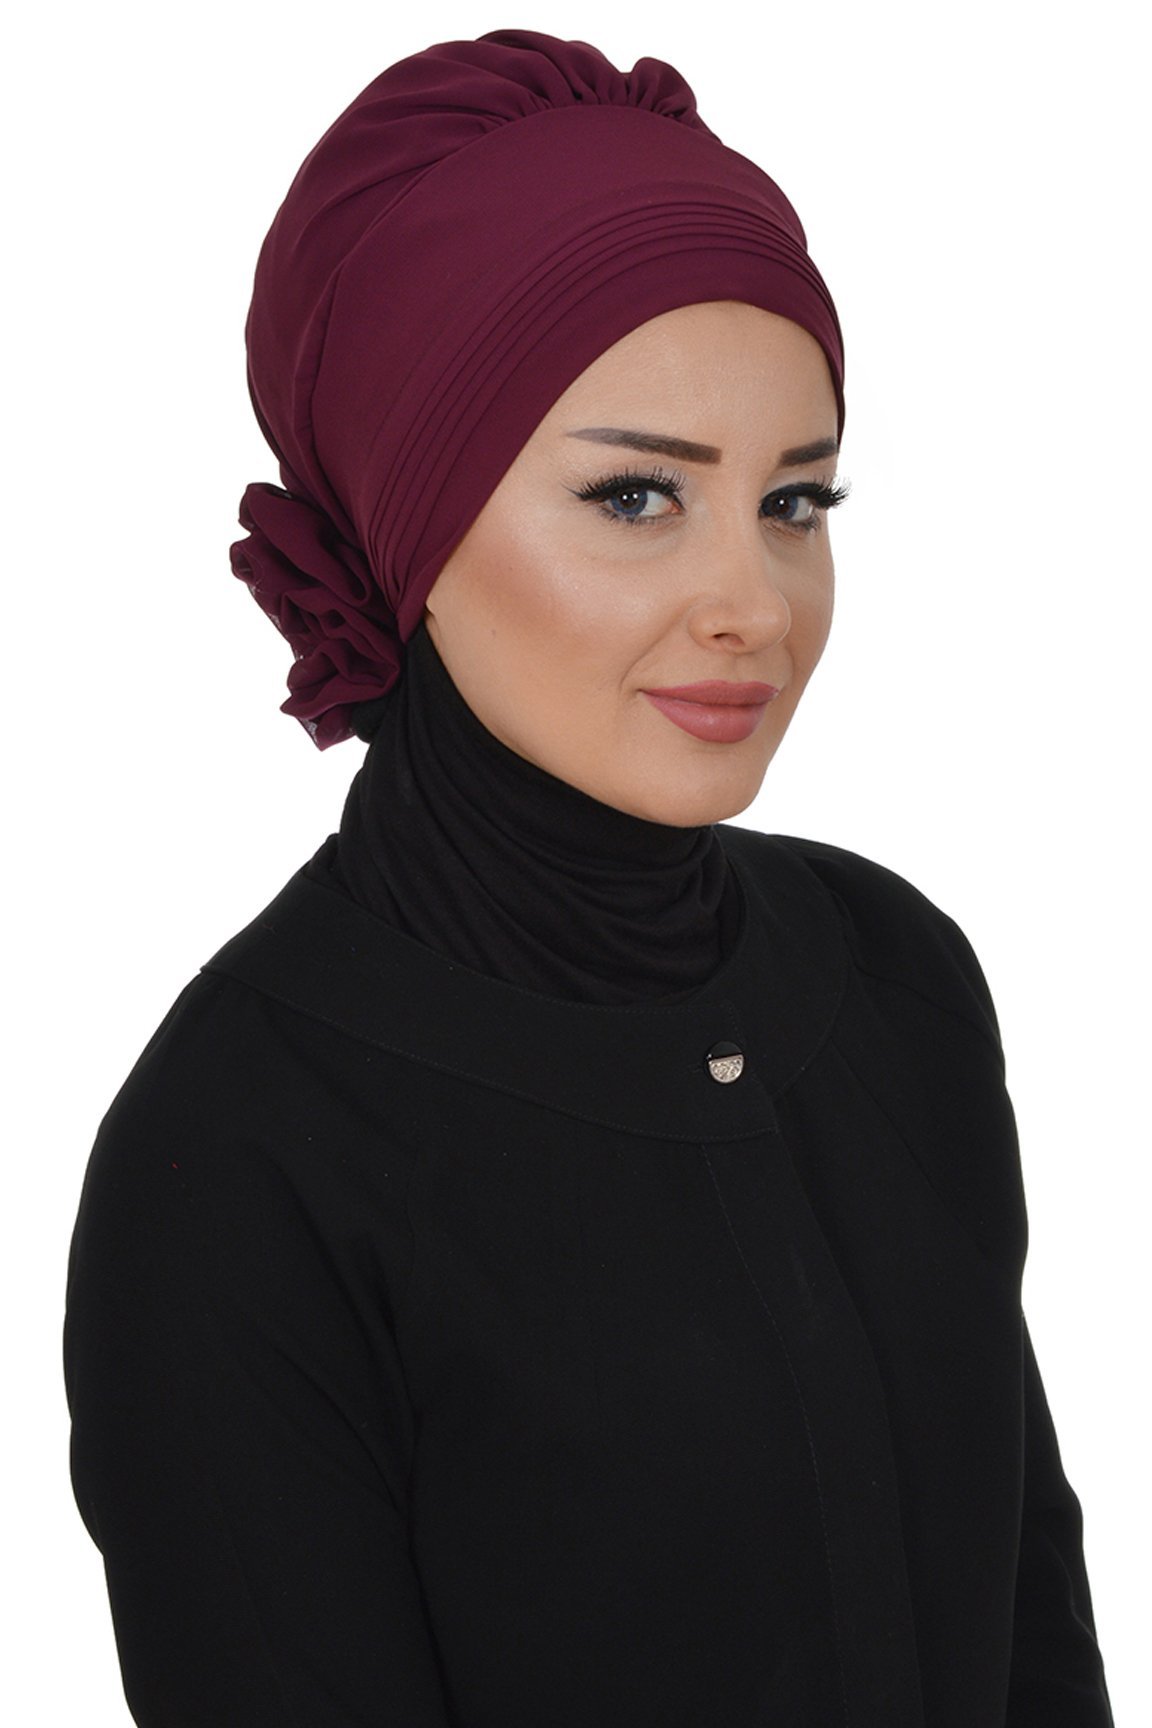 Instant Chiffon Turban Hijab Plum